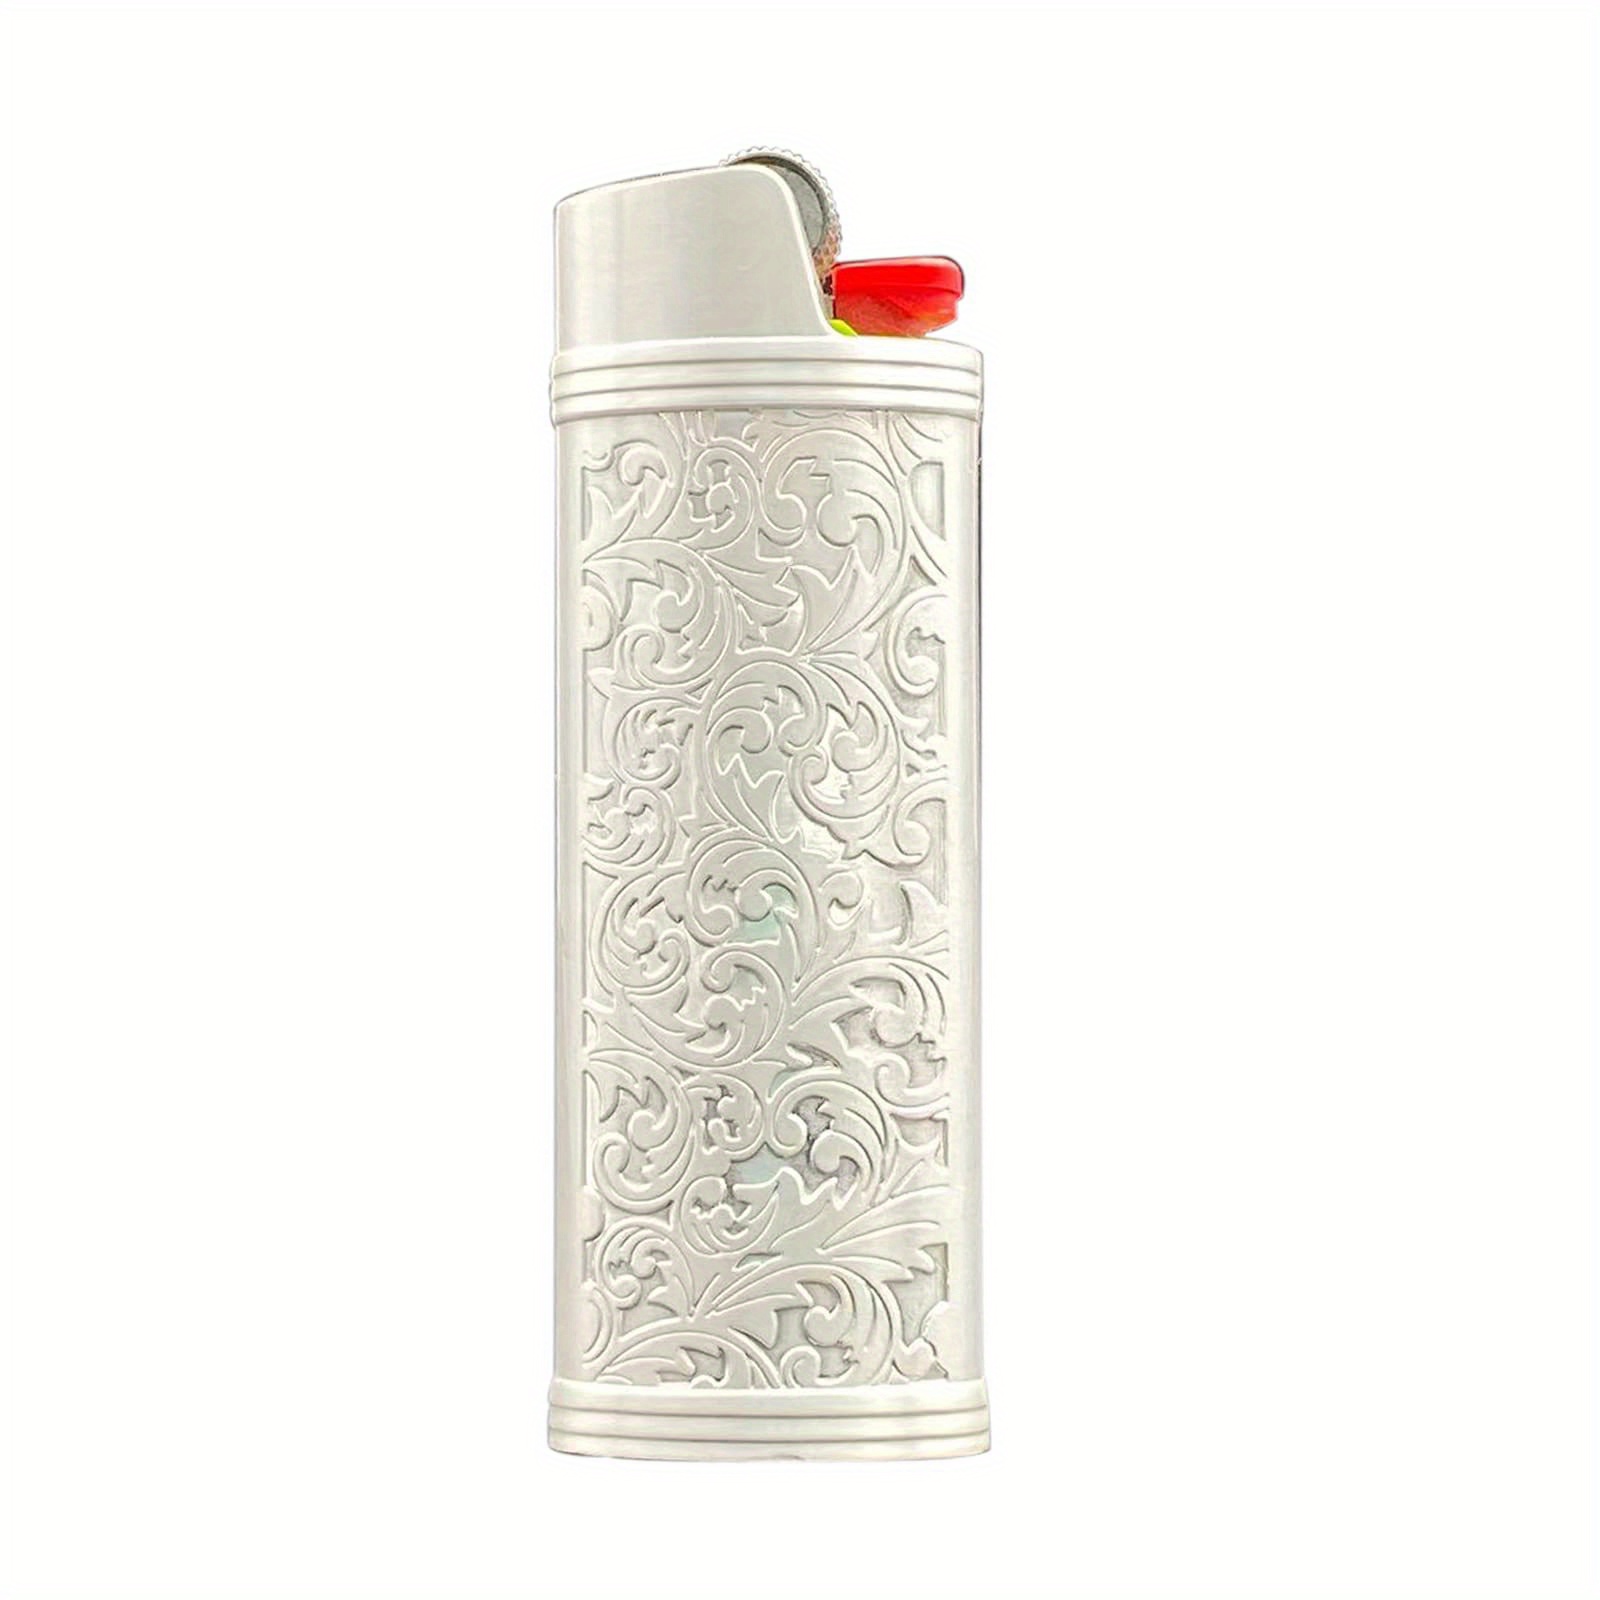 Lucklybestseller Metal Lighter Case Cover Floral Stamped for Bic Full Size  Lighter J6 (Gold)